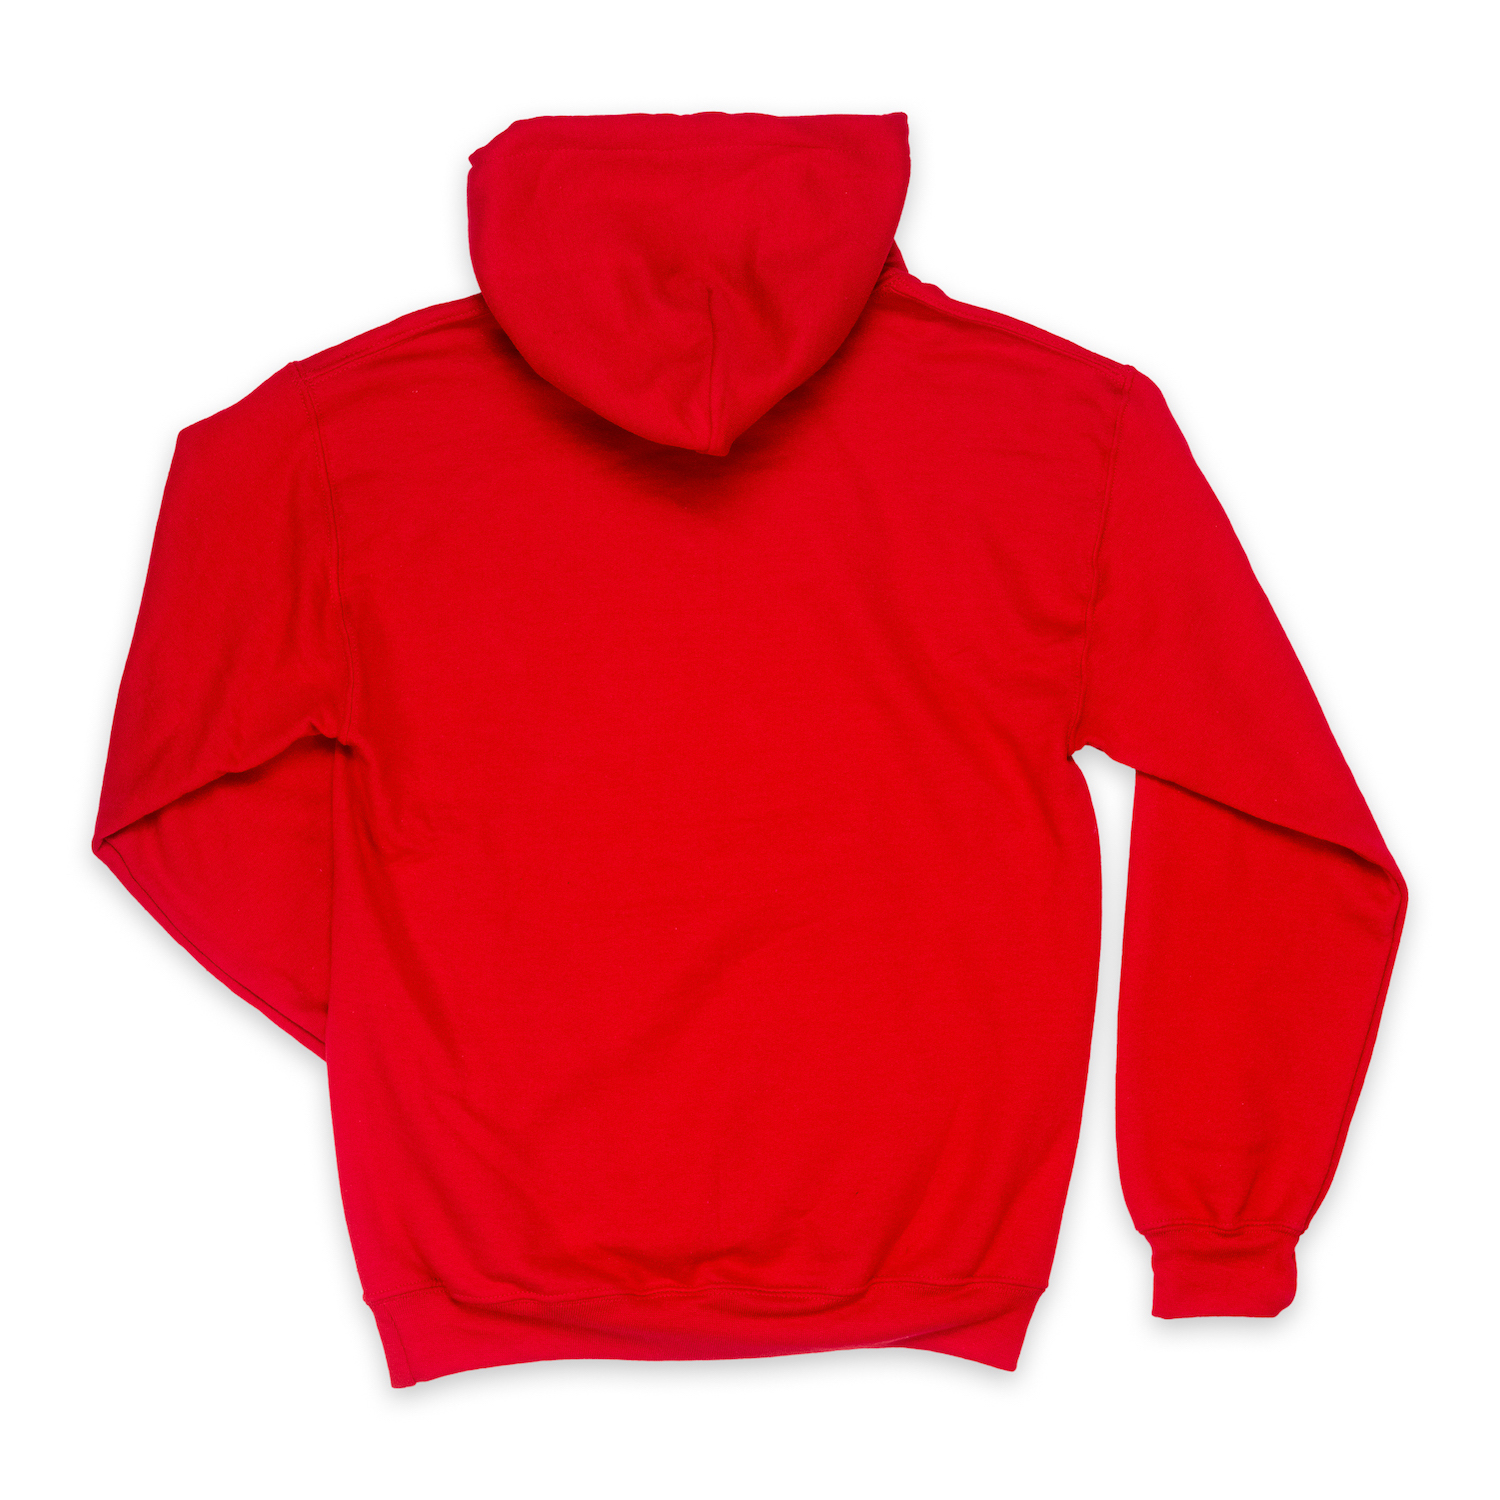 Beau Tyler - The Hootie Hoodie sweatshirt red back